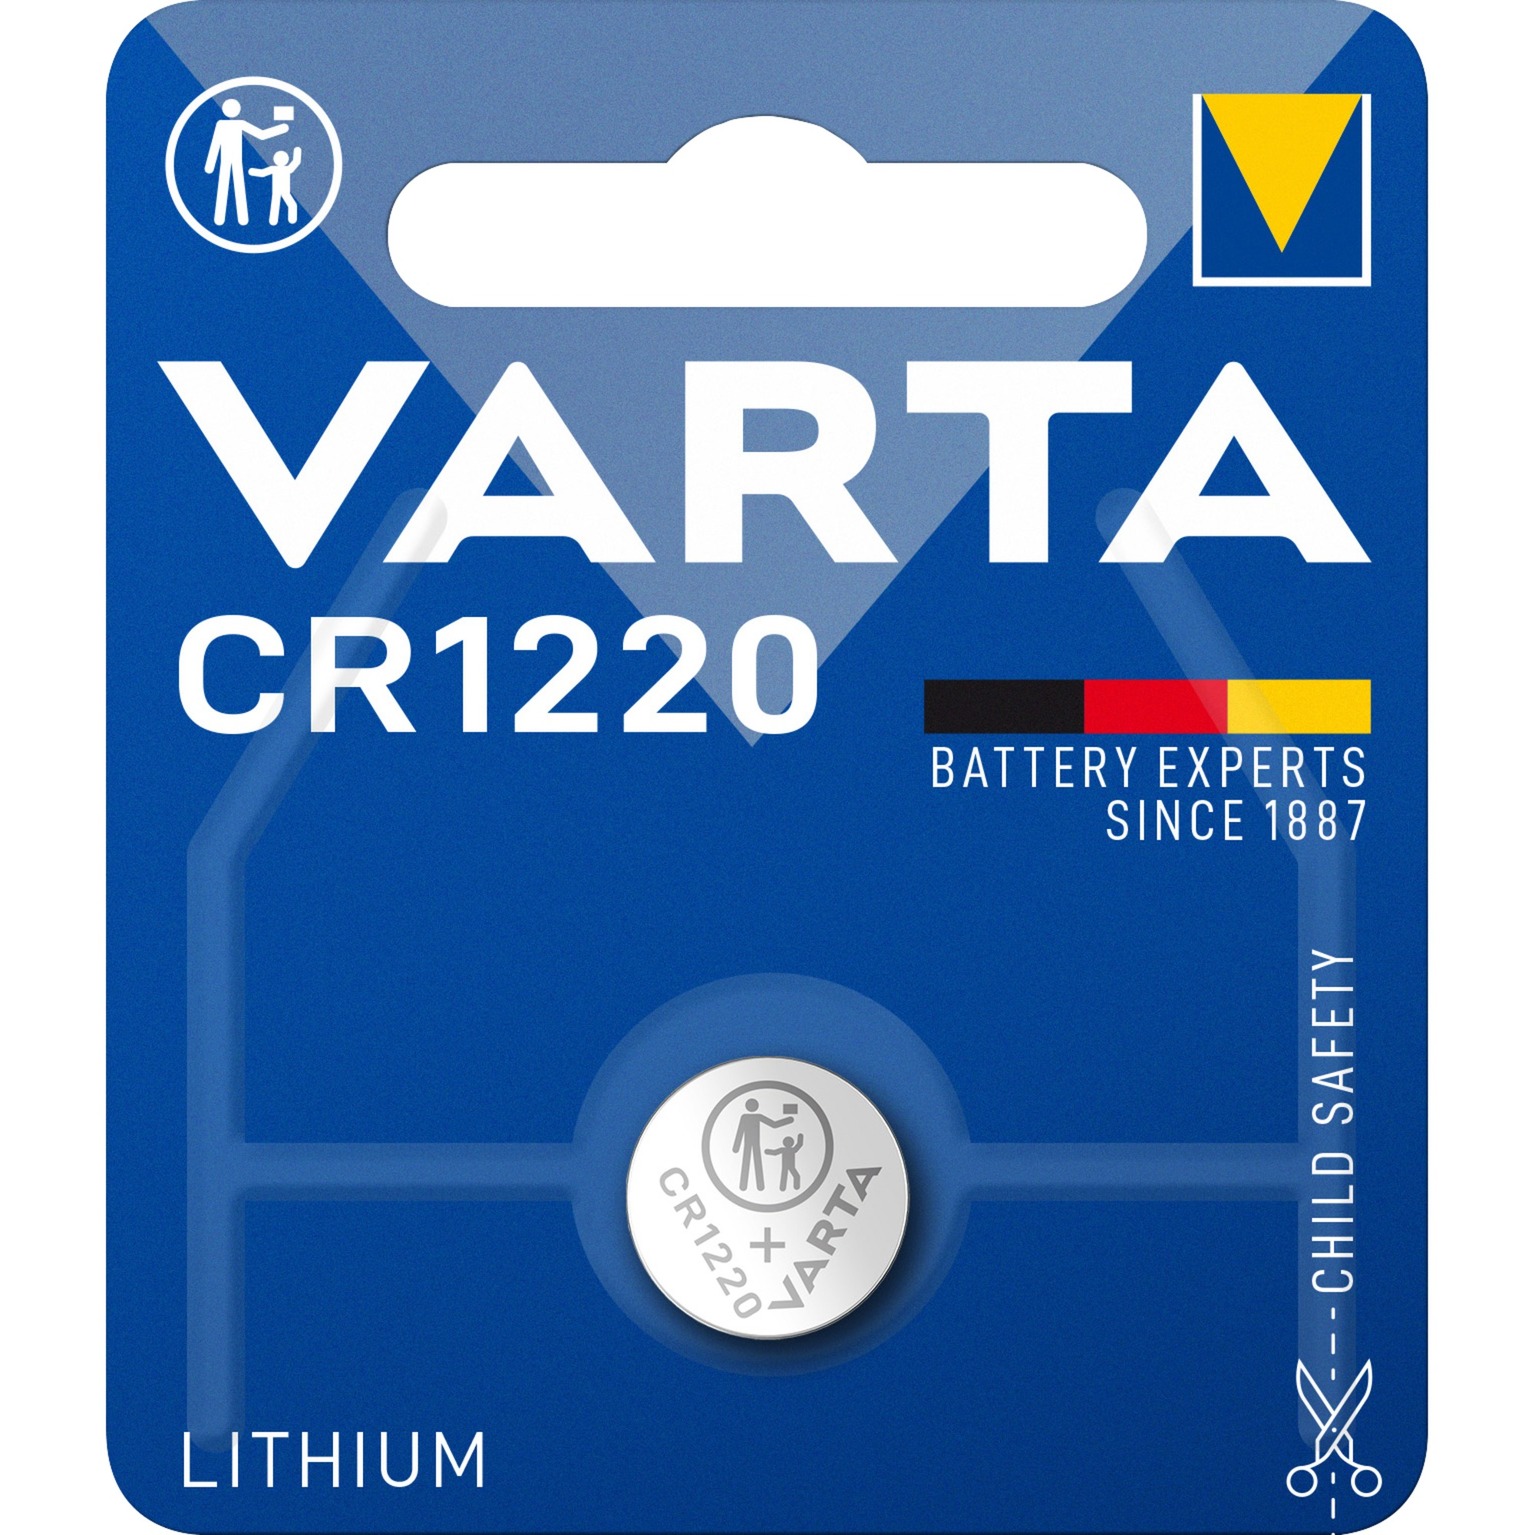 Image of Alternate - Professional CR1220, Batterie online einkaufen bei Alternate